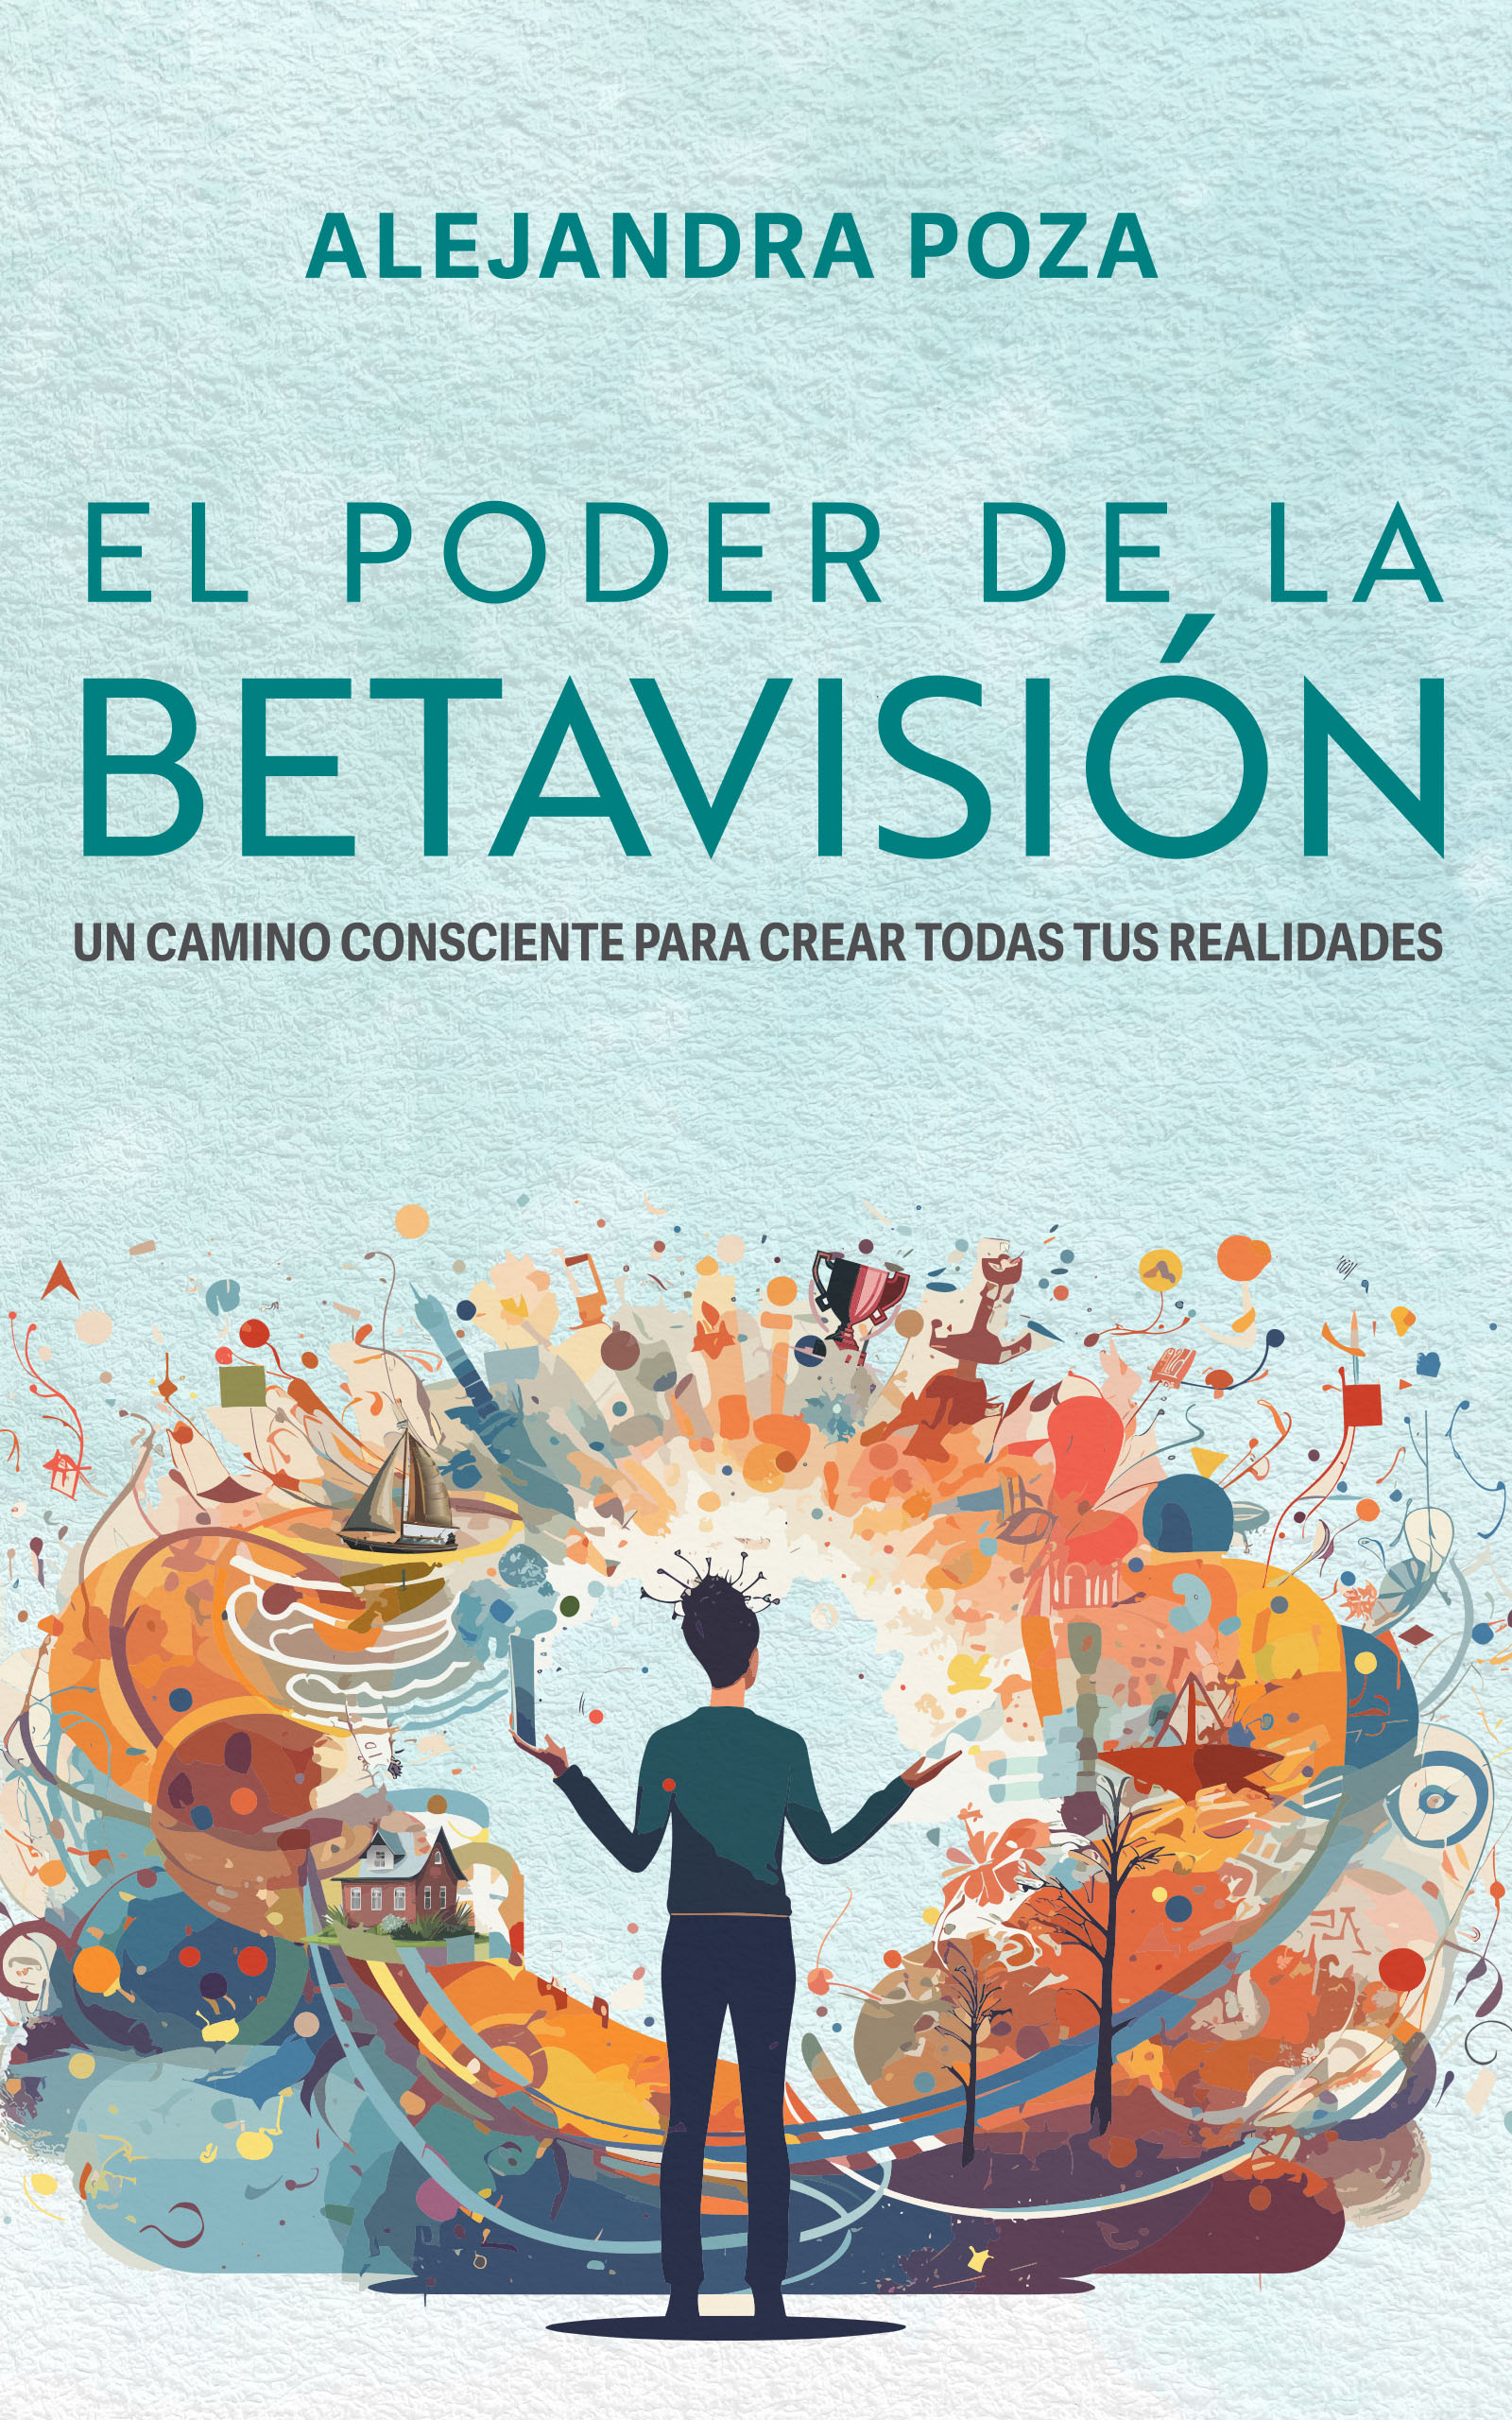 El poder de la Betavisión, de Alejandra Poza